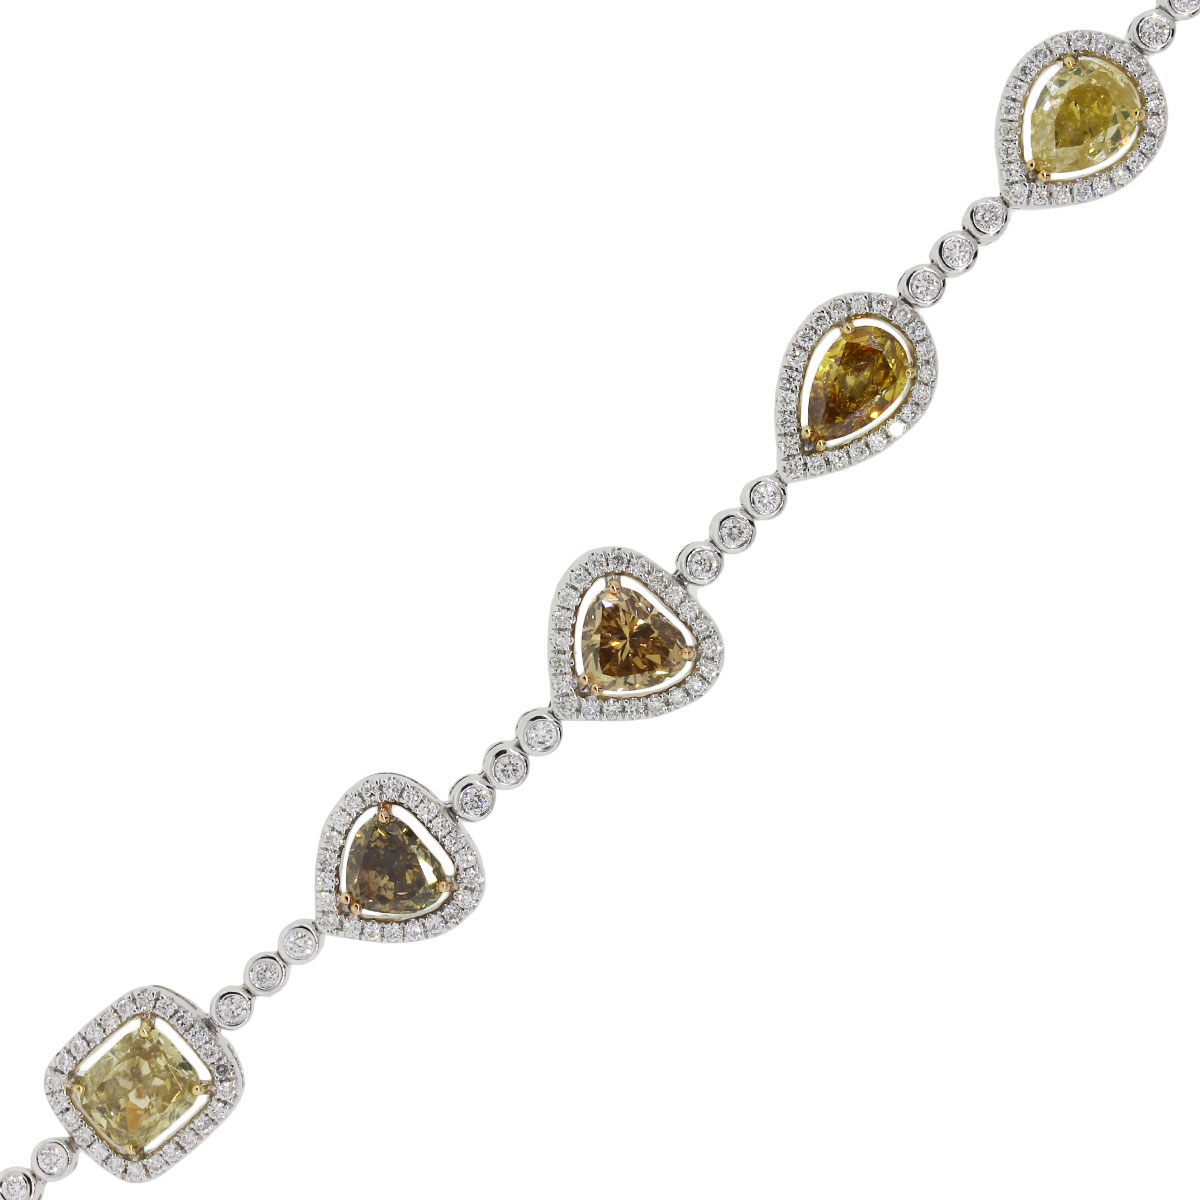 Fancy Radiant Cut Solitaire Diamond Bracelet - JD SOLITAIRE